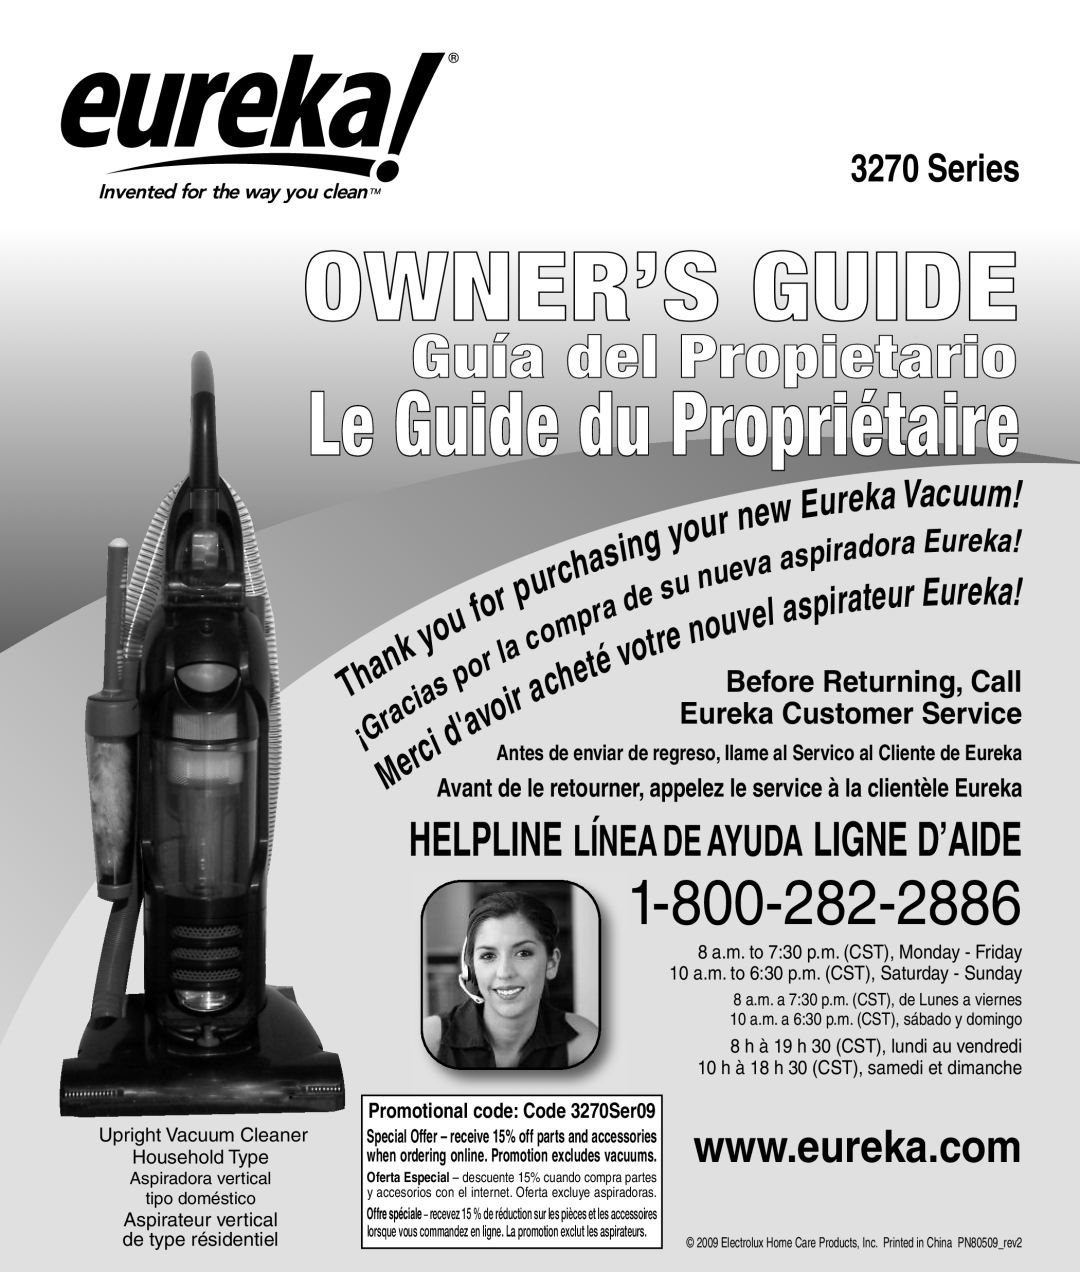 Eureka 3270 Series manual Owner’S Guide, Le Guide du Propriétaire, Guía del Propietario 